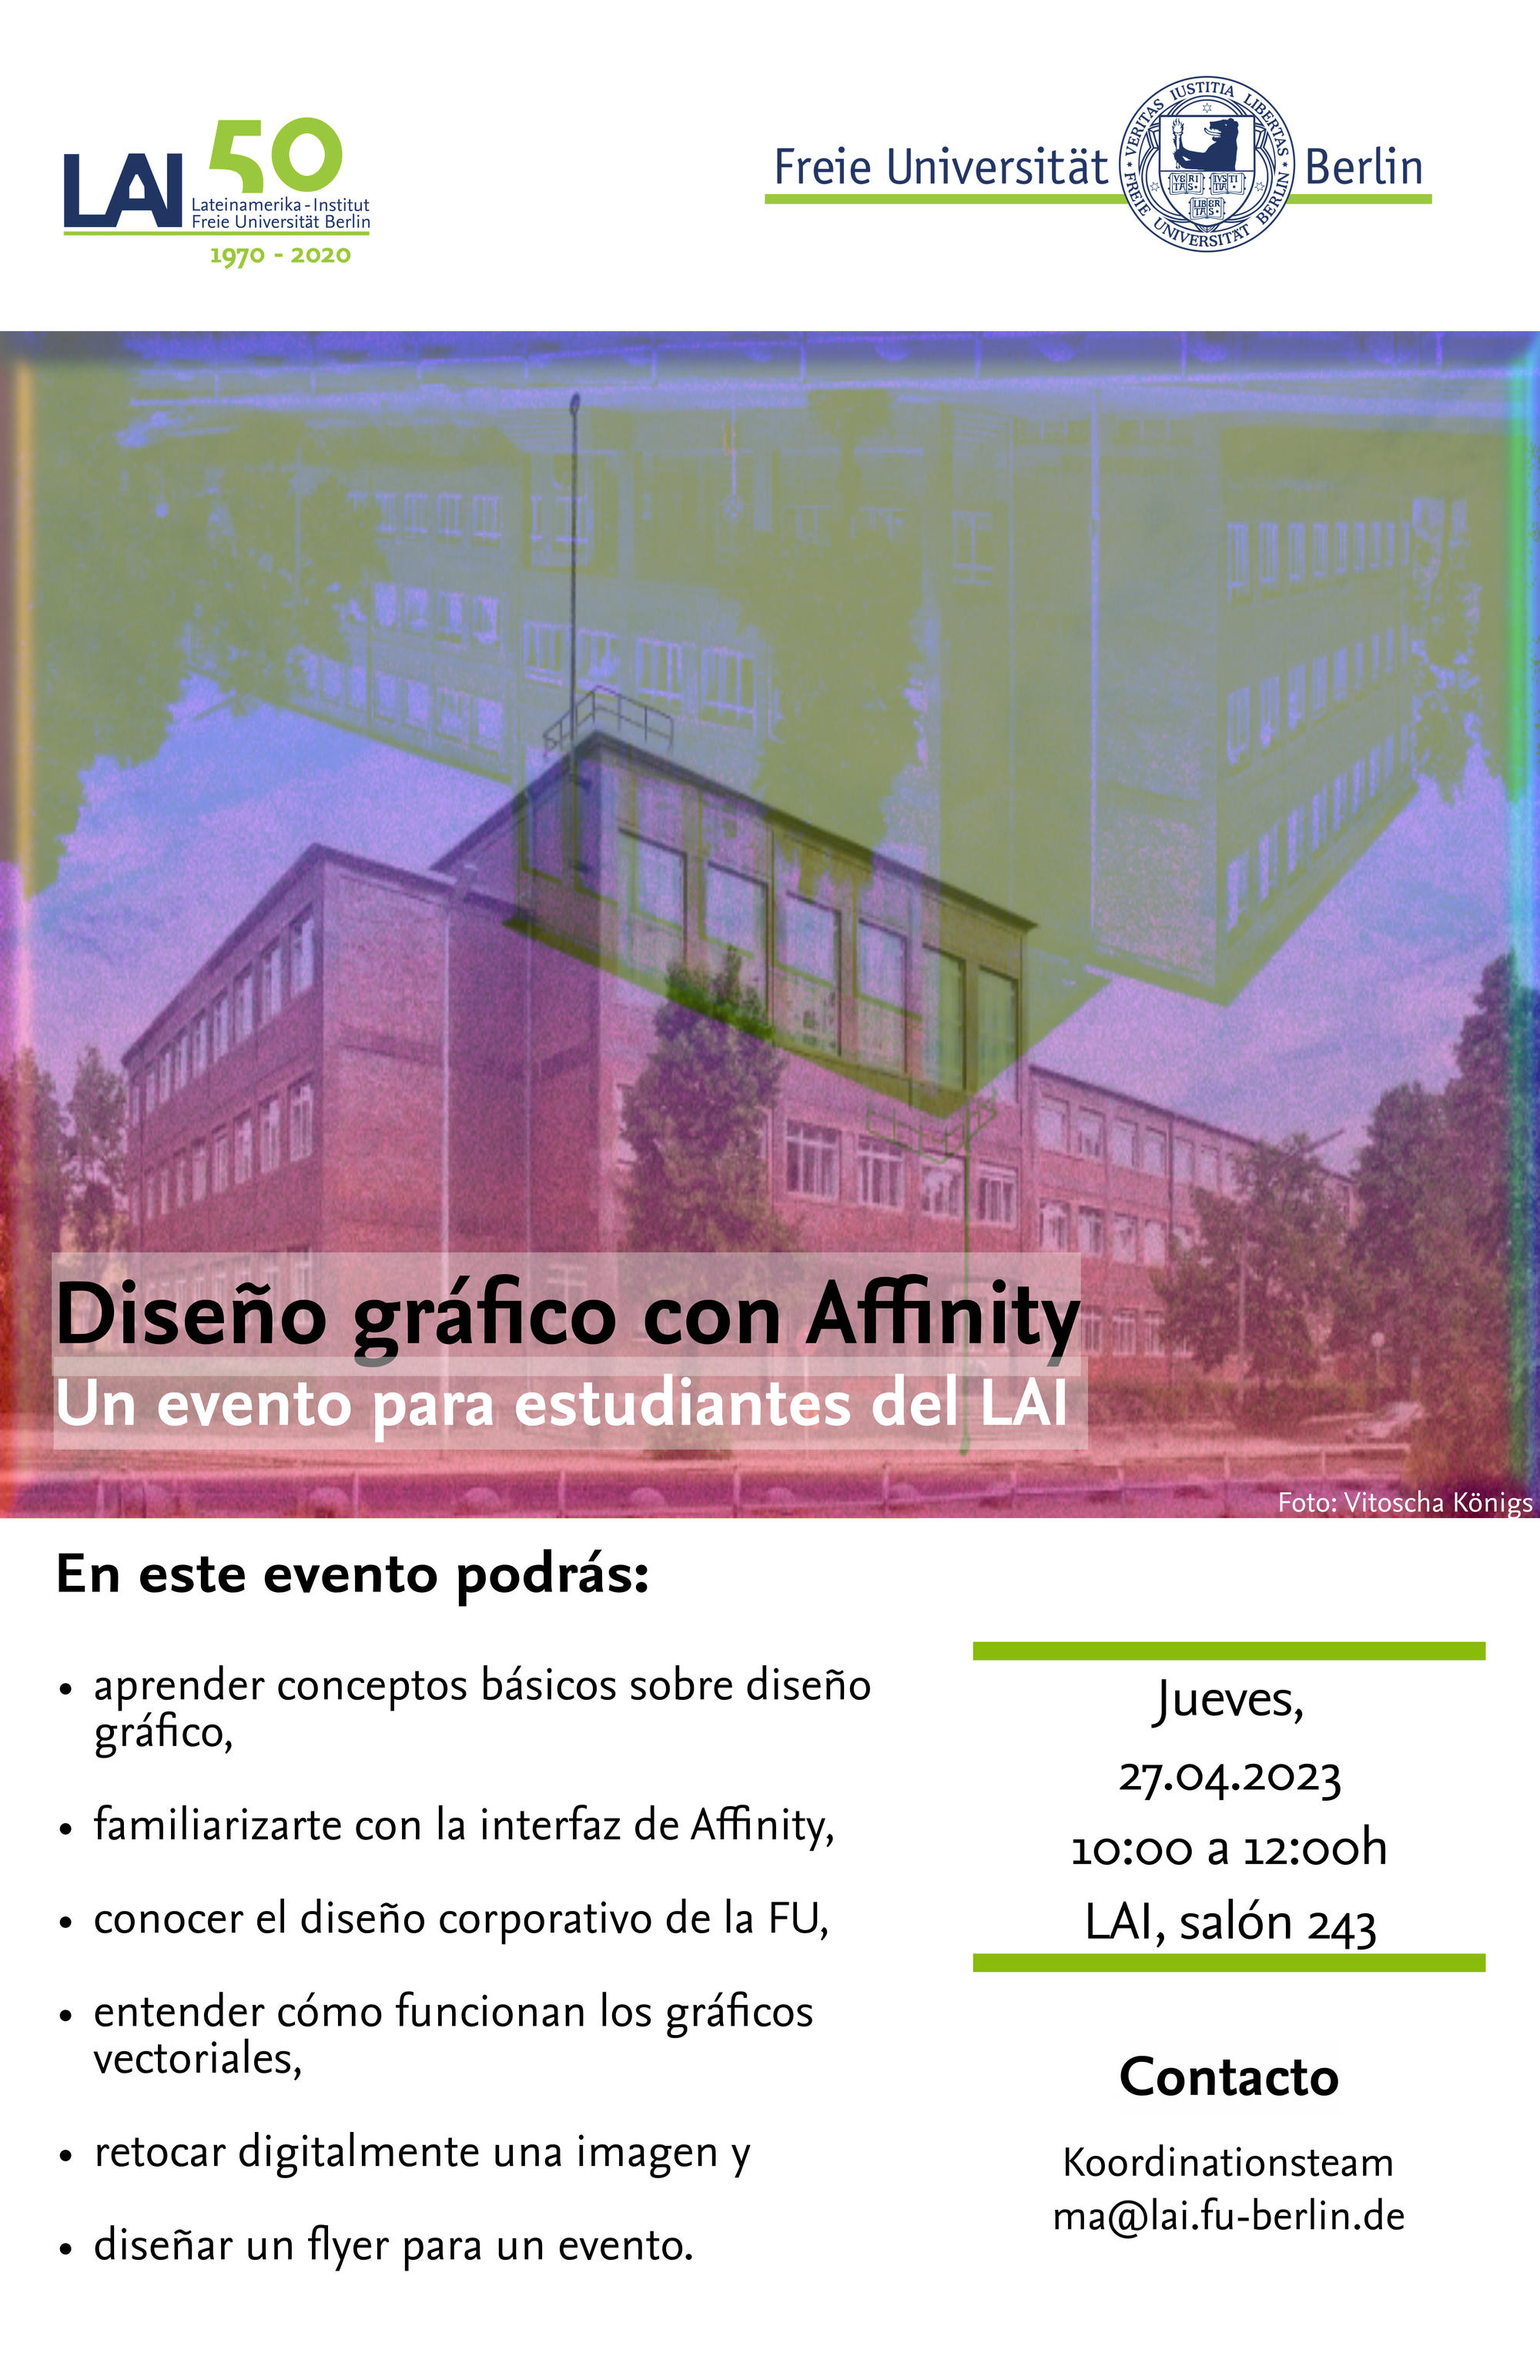 Evento de tutoría interactivo „Diseño gráfico con Affinity: primeros pasos“ el 27.04.2023